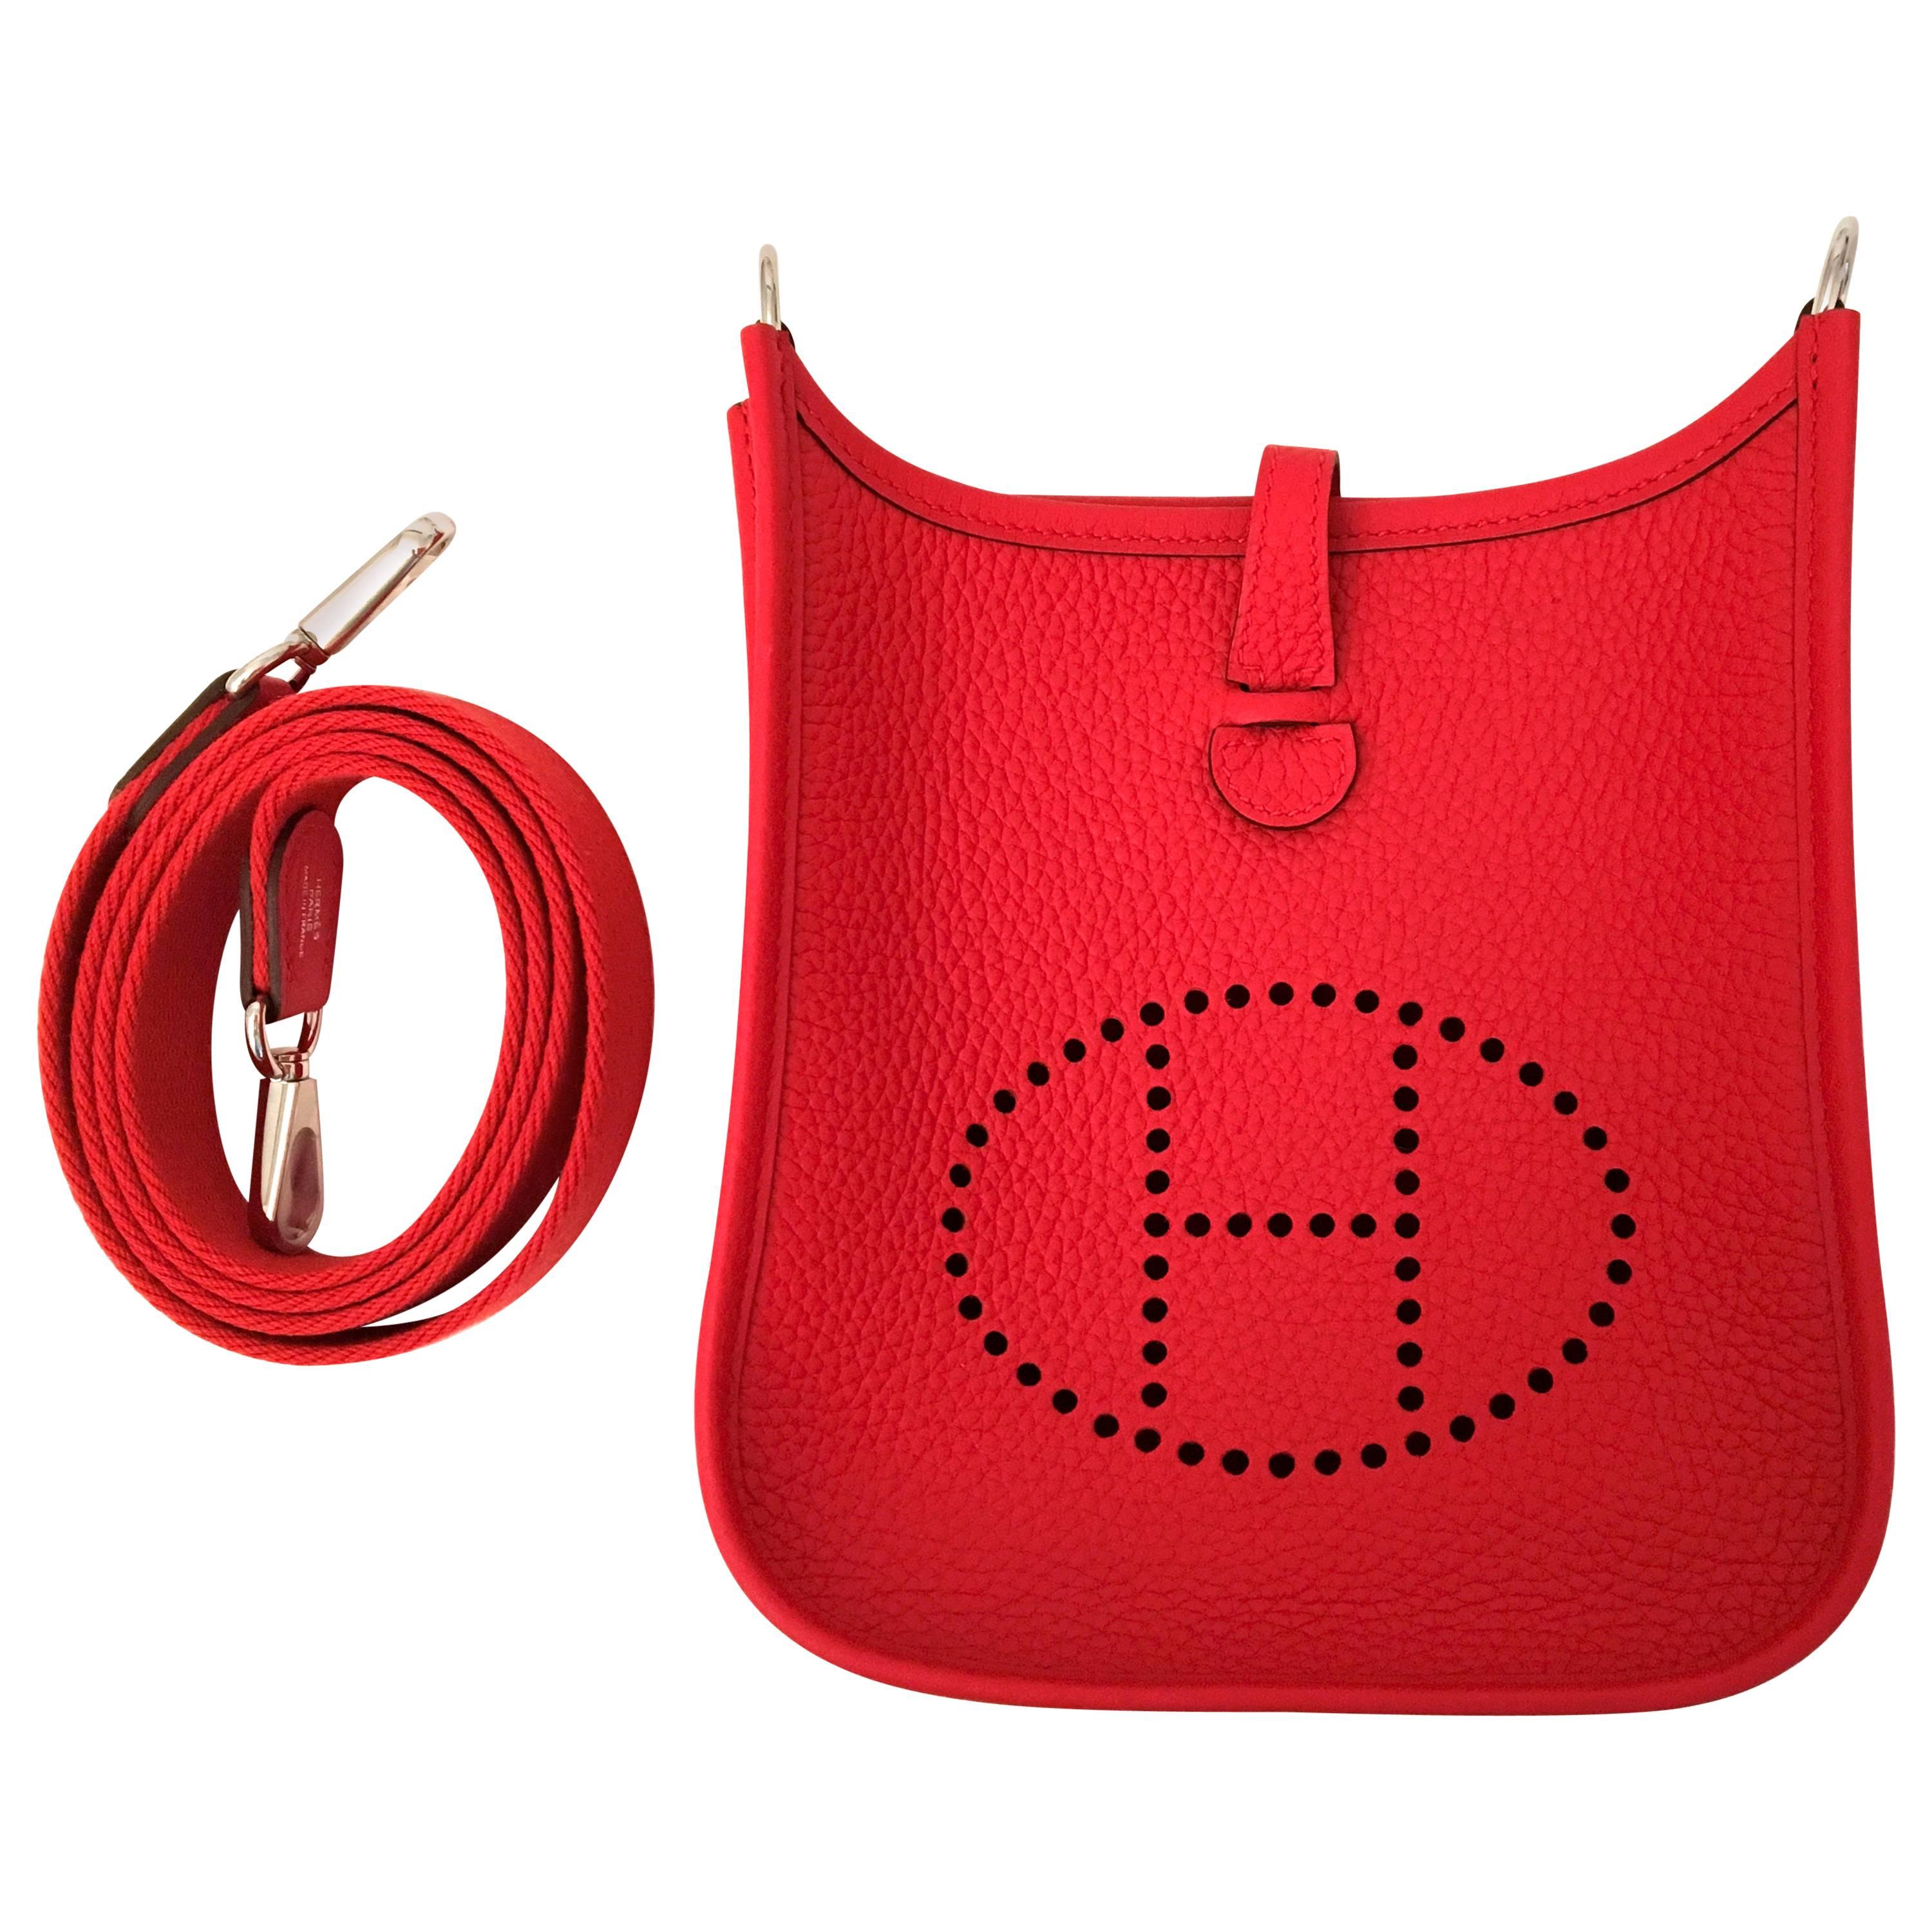 New HERMES Mini Evelyne Red Tomato Crossbody Bag - Clemence Leather